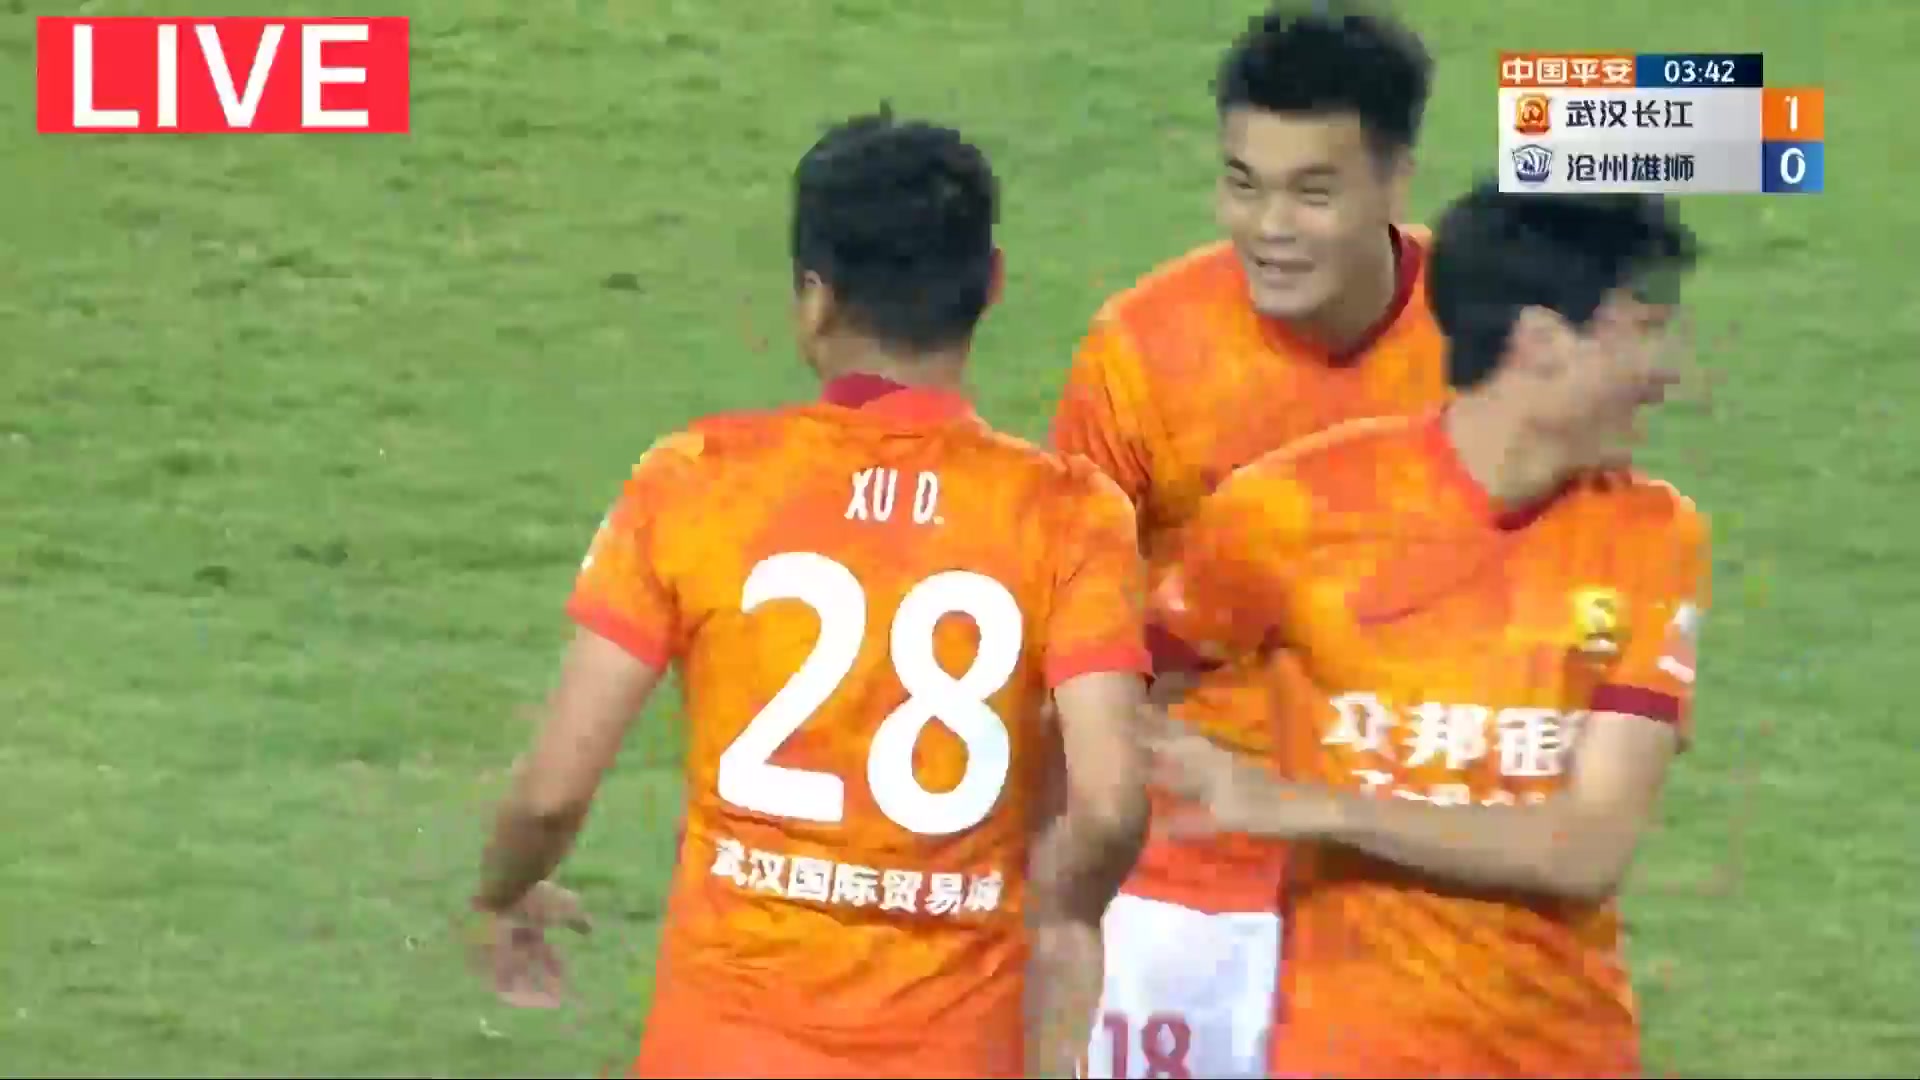 CHA CSL Wuhan FC Vs Cangzhou Mighty Lions Xu Dong Goal in 3 min, Score 1:0